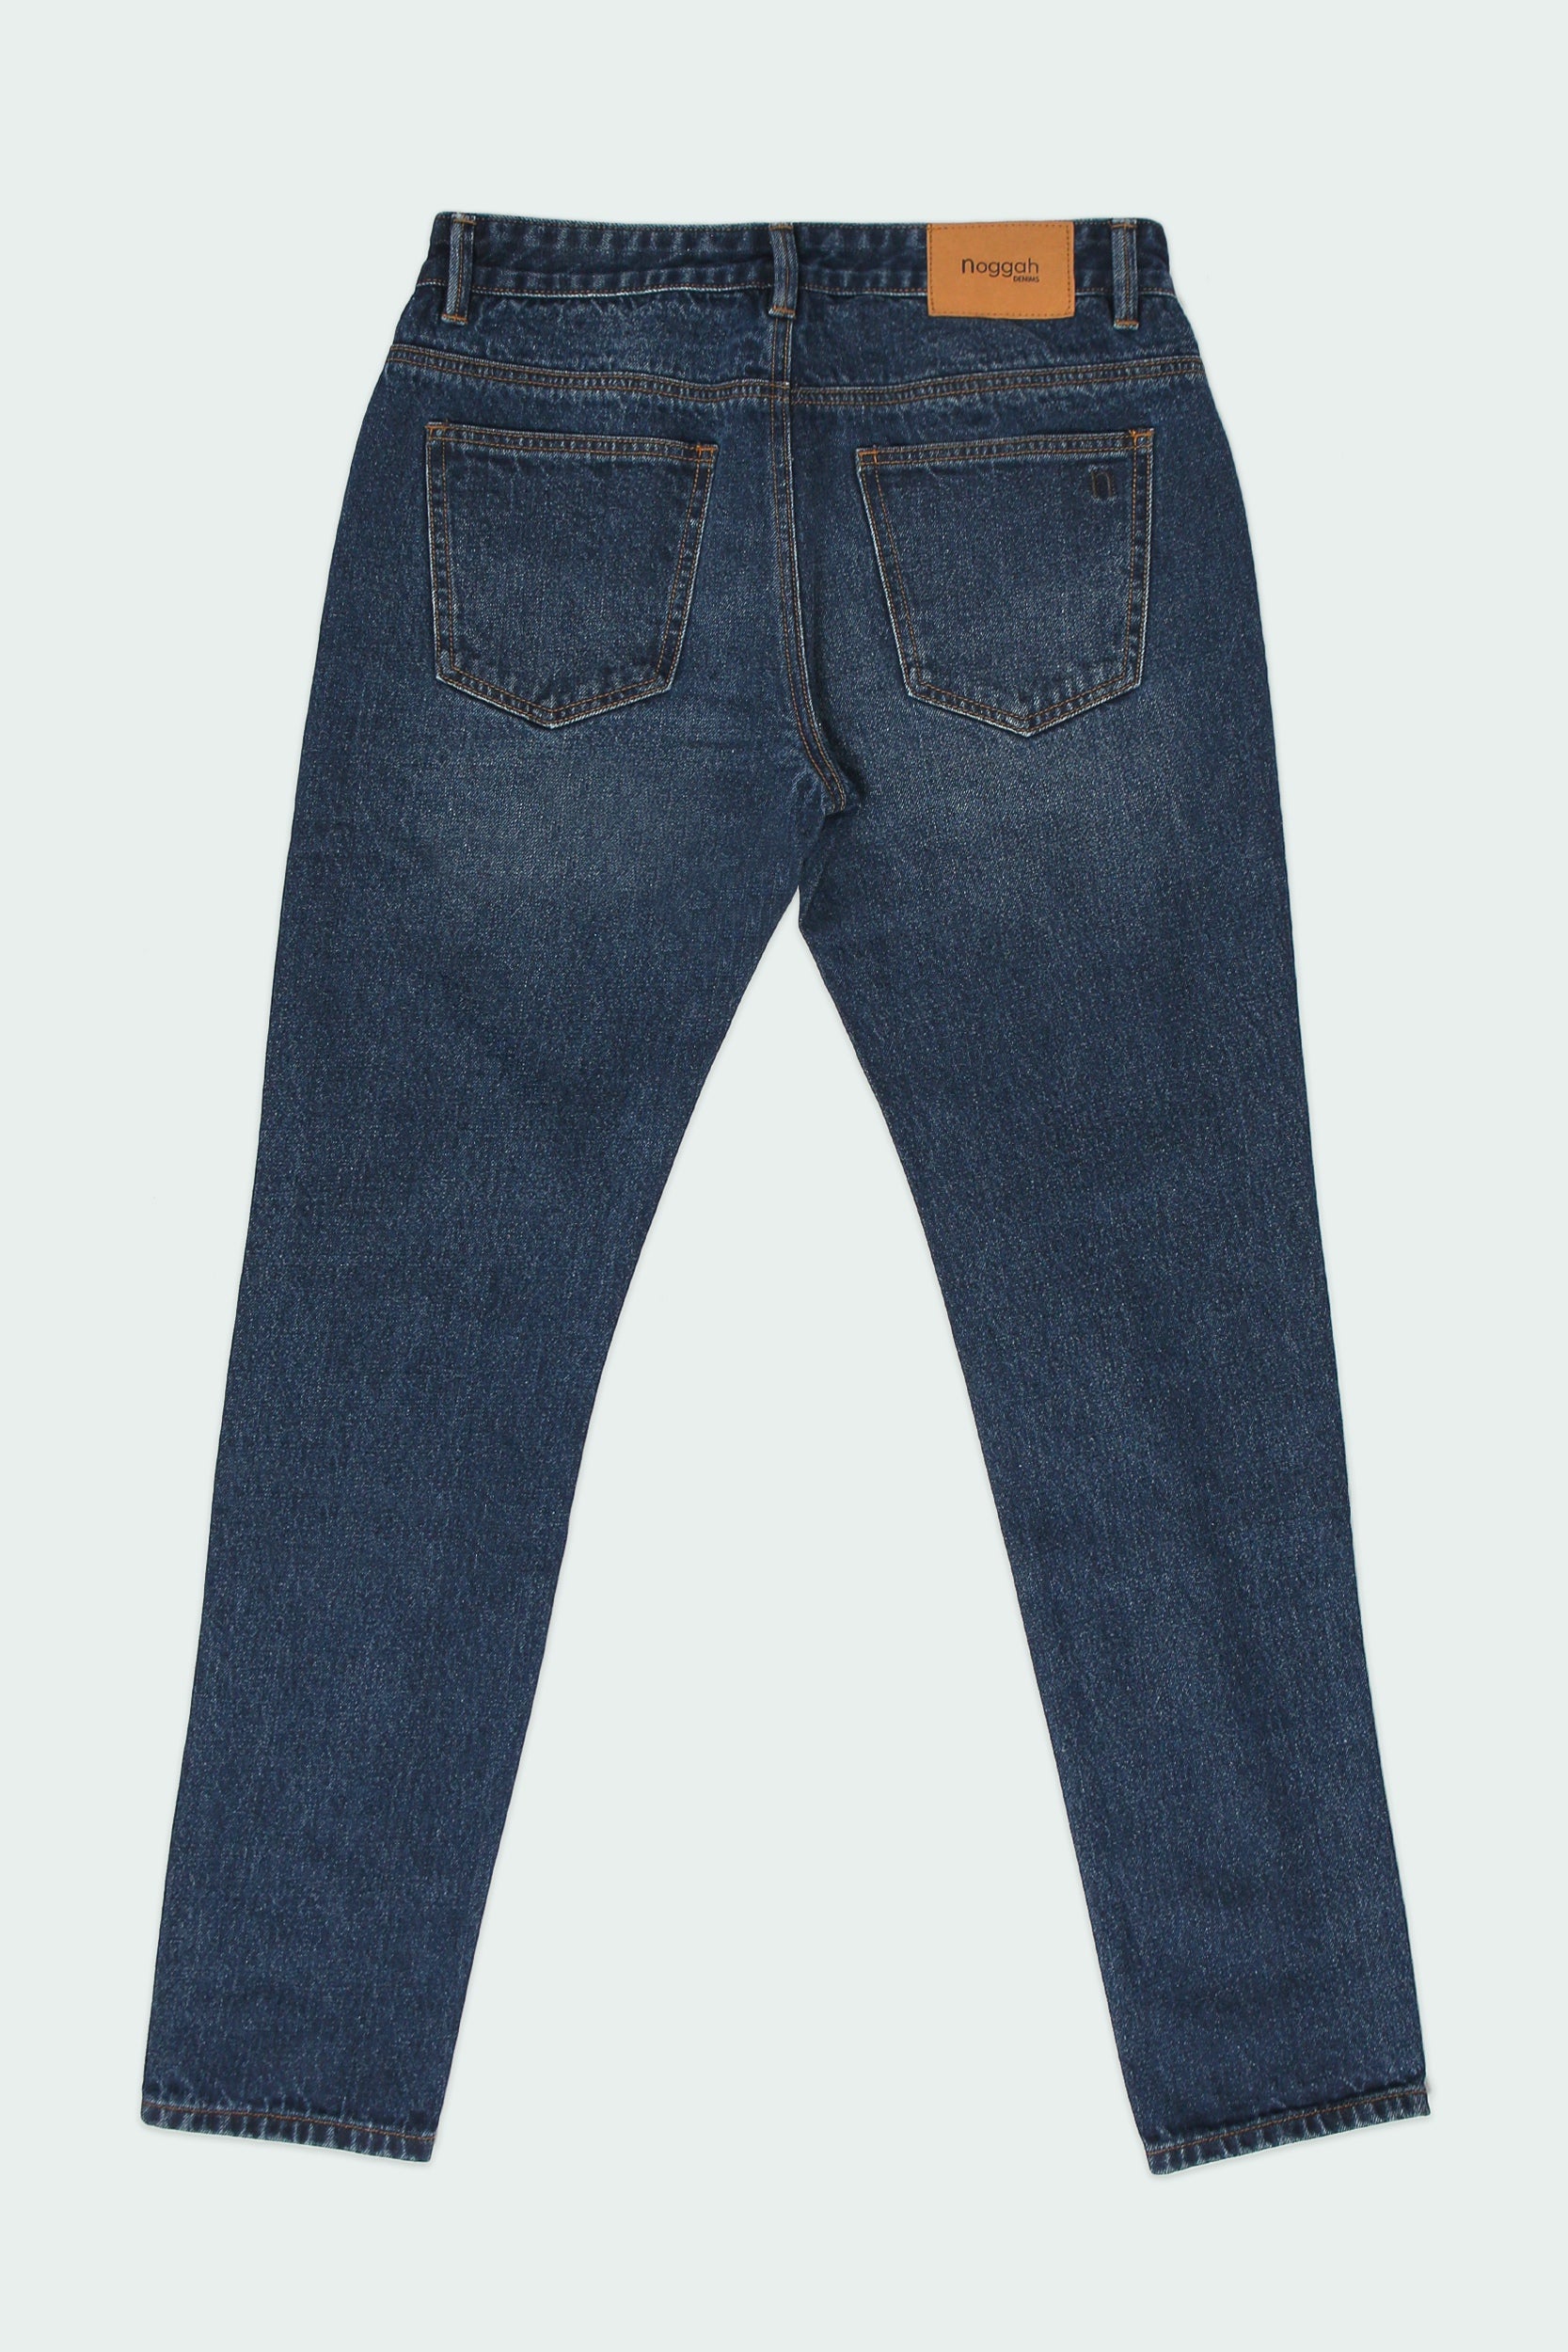 Boulder Denim 2.0 Men's Slim Fit Jeans Newmoon Blue - Long Inseam